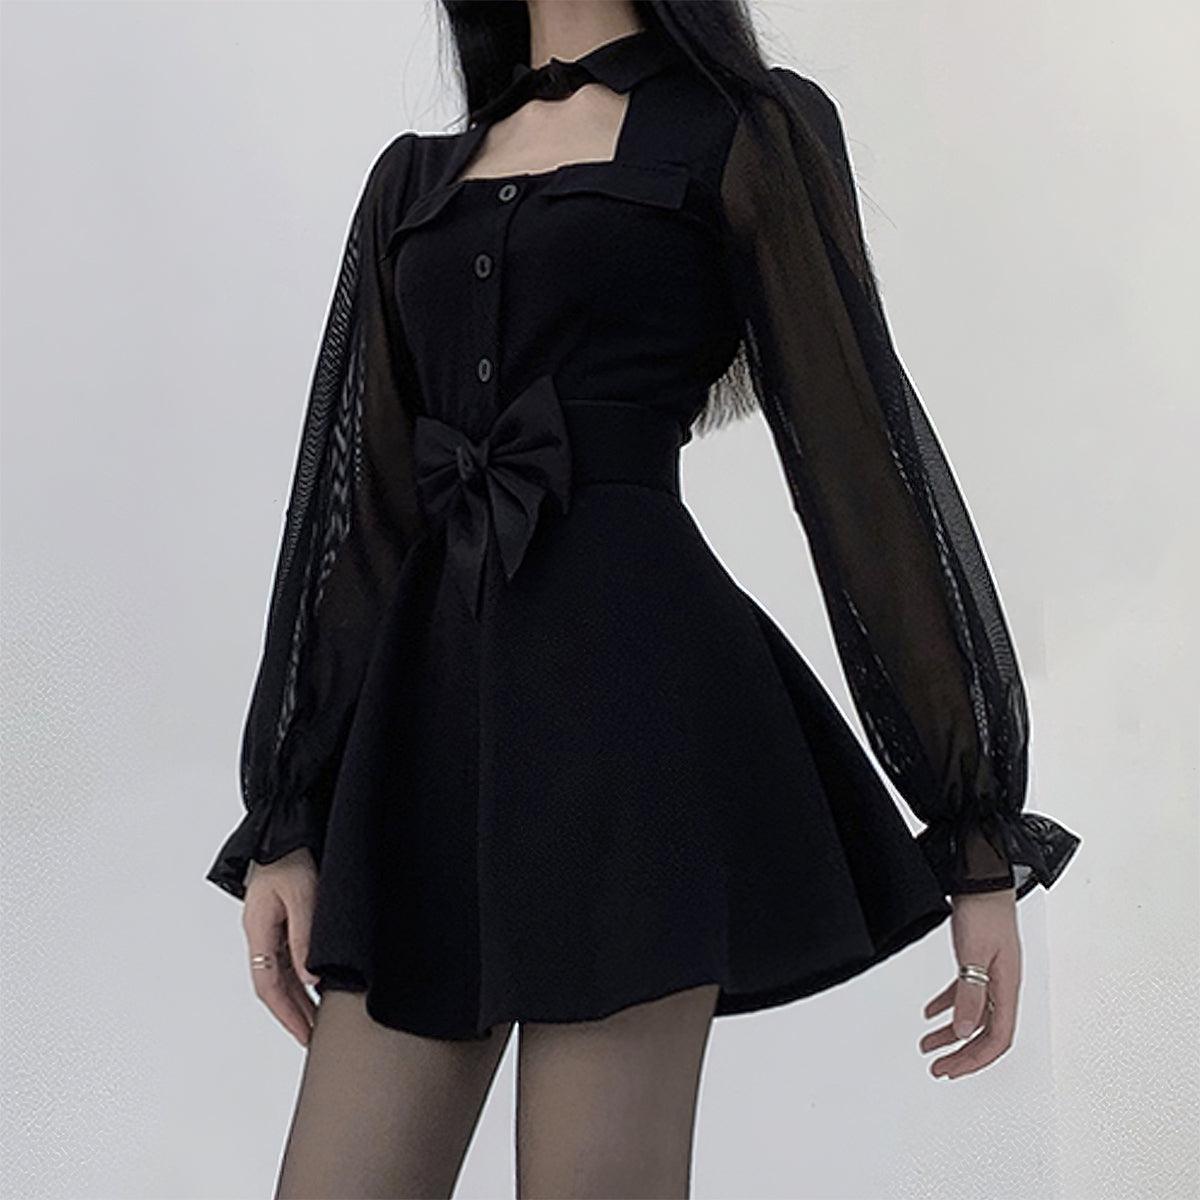 classy little black dress aesthetic